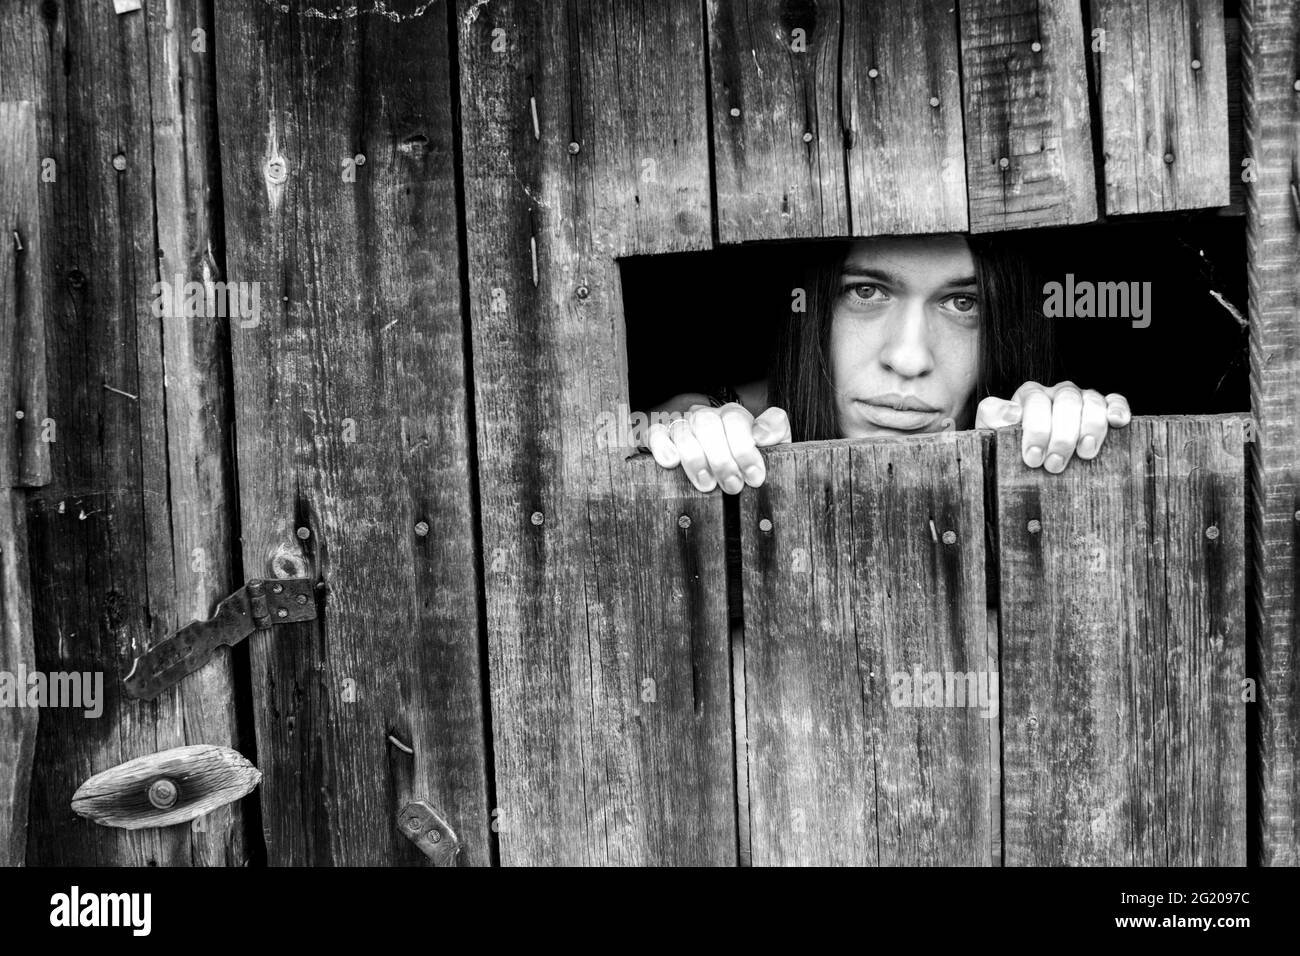 Une femme regardant à travers la fissure d'un hangar en bois verrouillé. Photo en noir et blanc. Banque D'Images